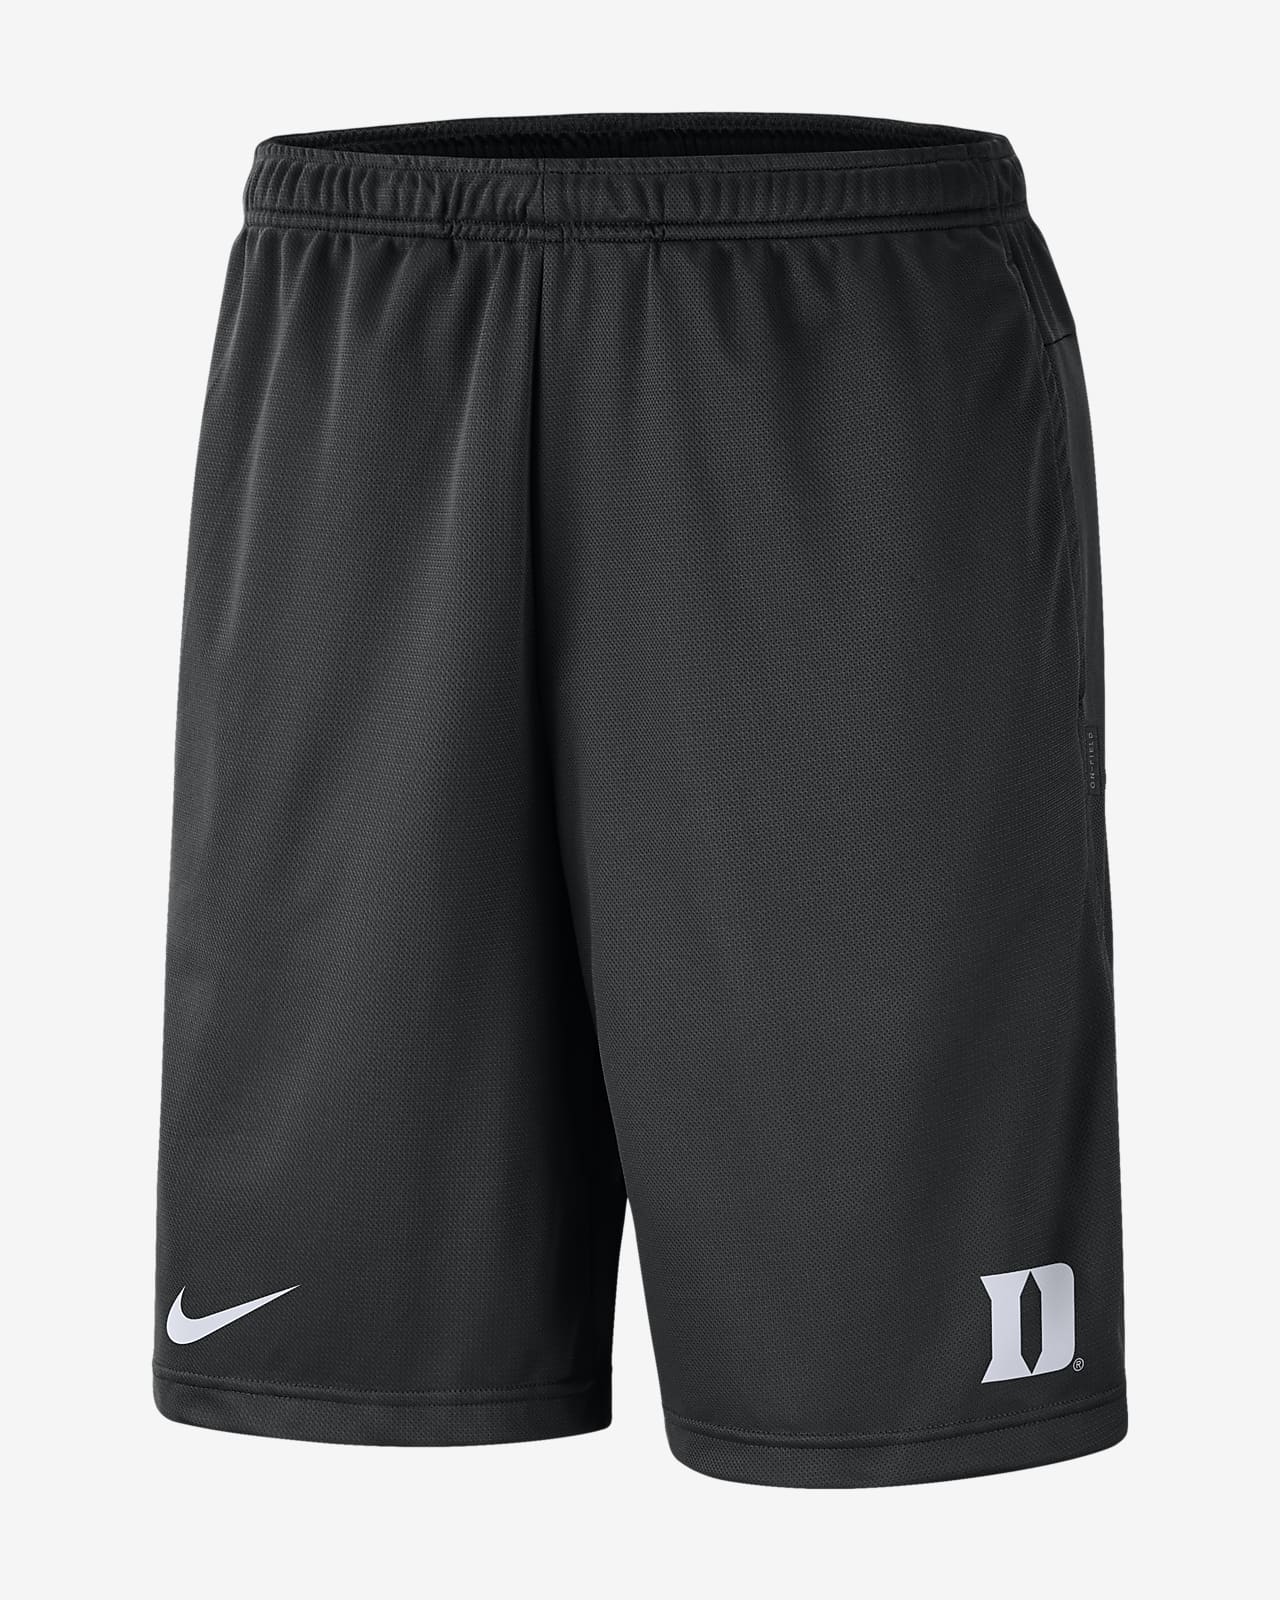 Nike College Dri-FIT Coach (Duke) Men's Shorts. Nike.com